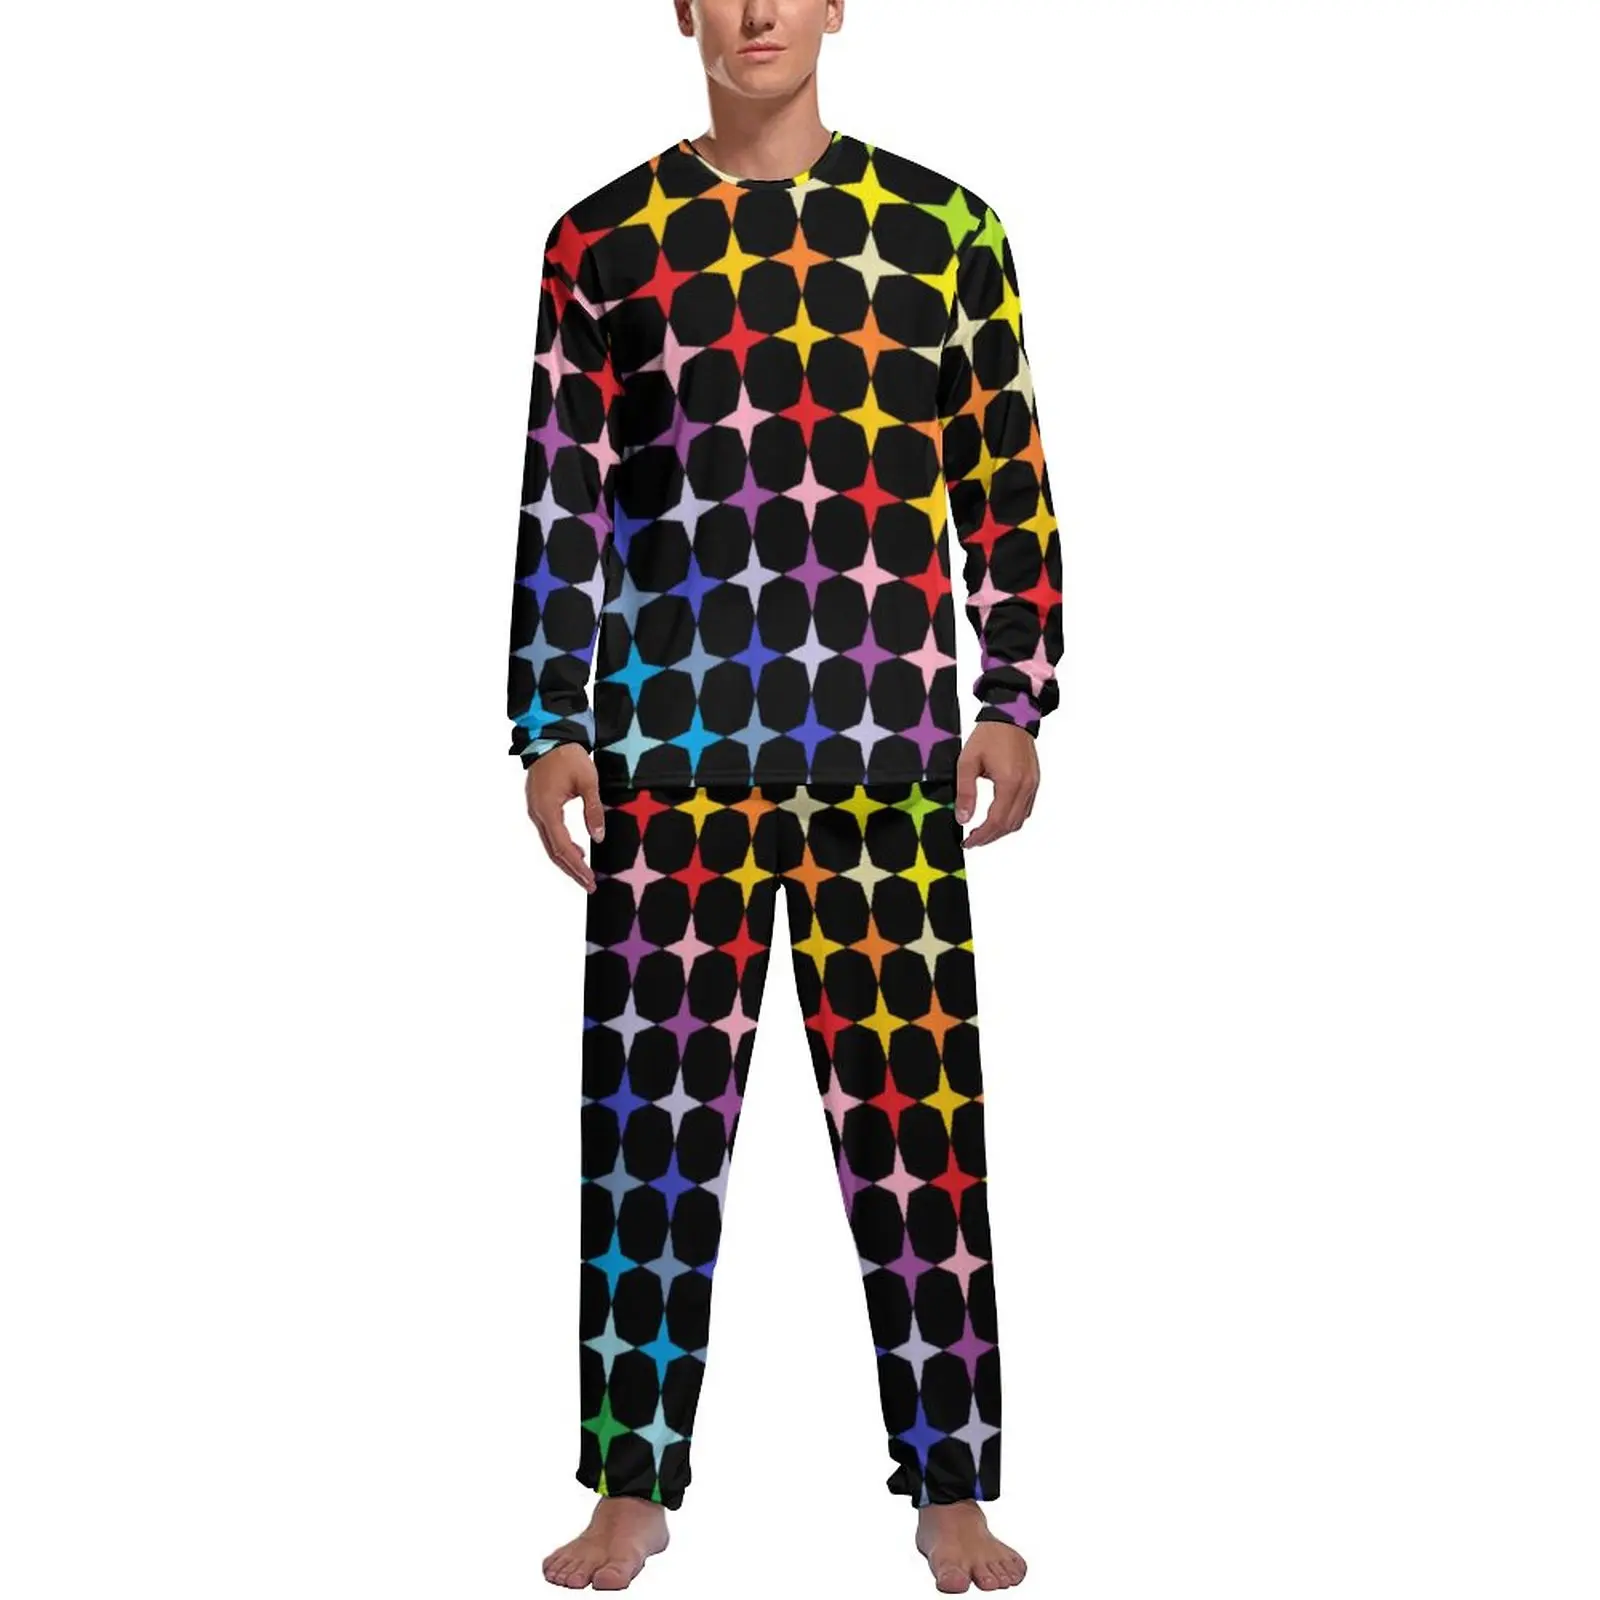 Funny Rainbow Pajamas Autumn Four Points Stars Leisure Nightwear Man 2 Pieces Design Long Sleeve Retro Pajama Sets